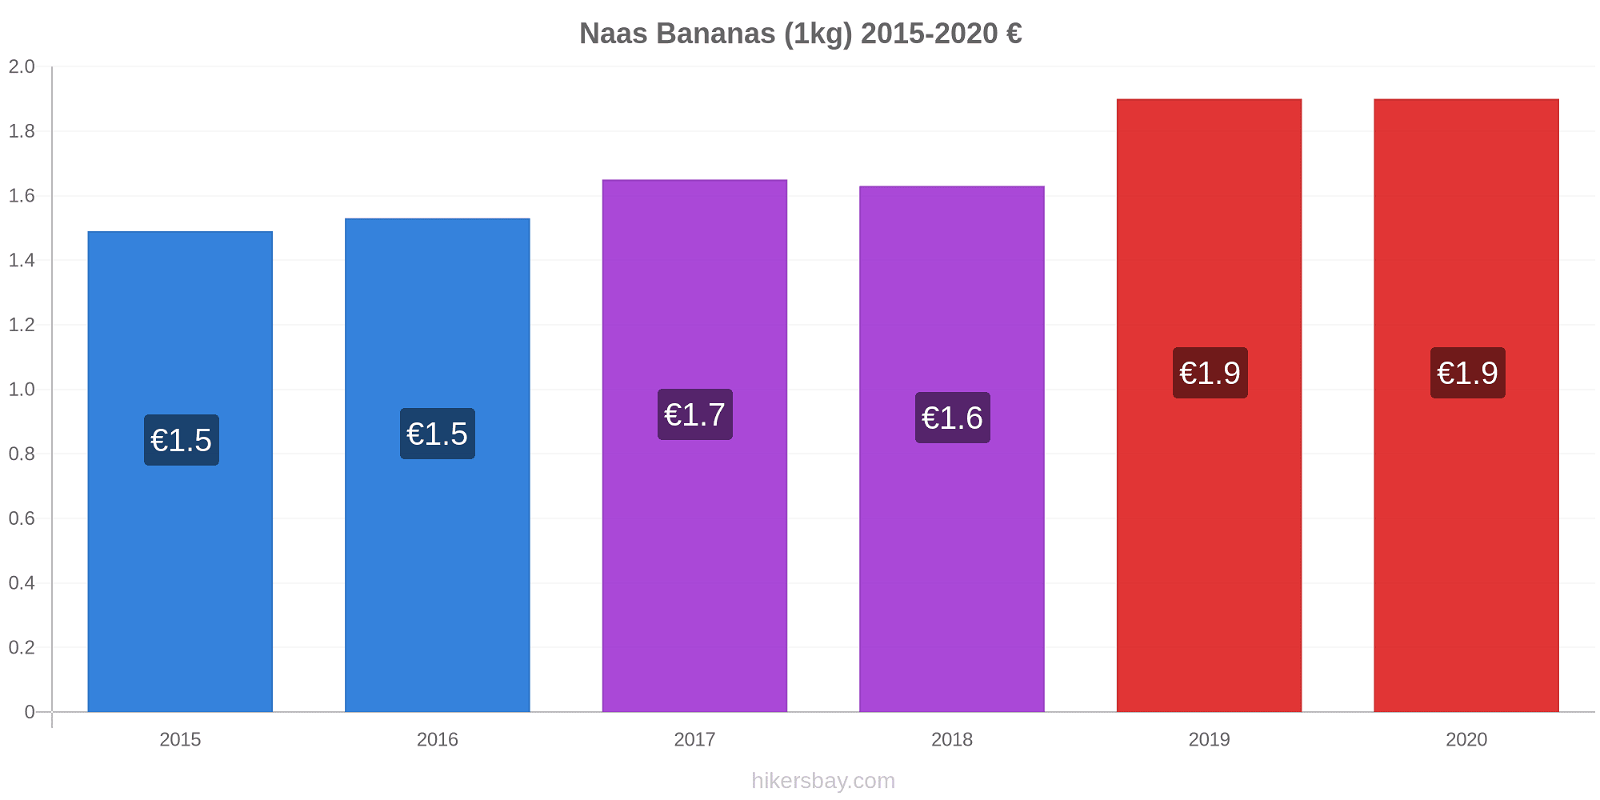 Naas variação de preço Banana (1kg) hikersbay.com